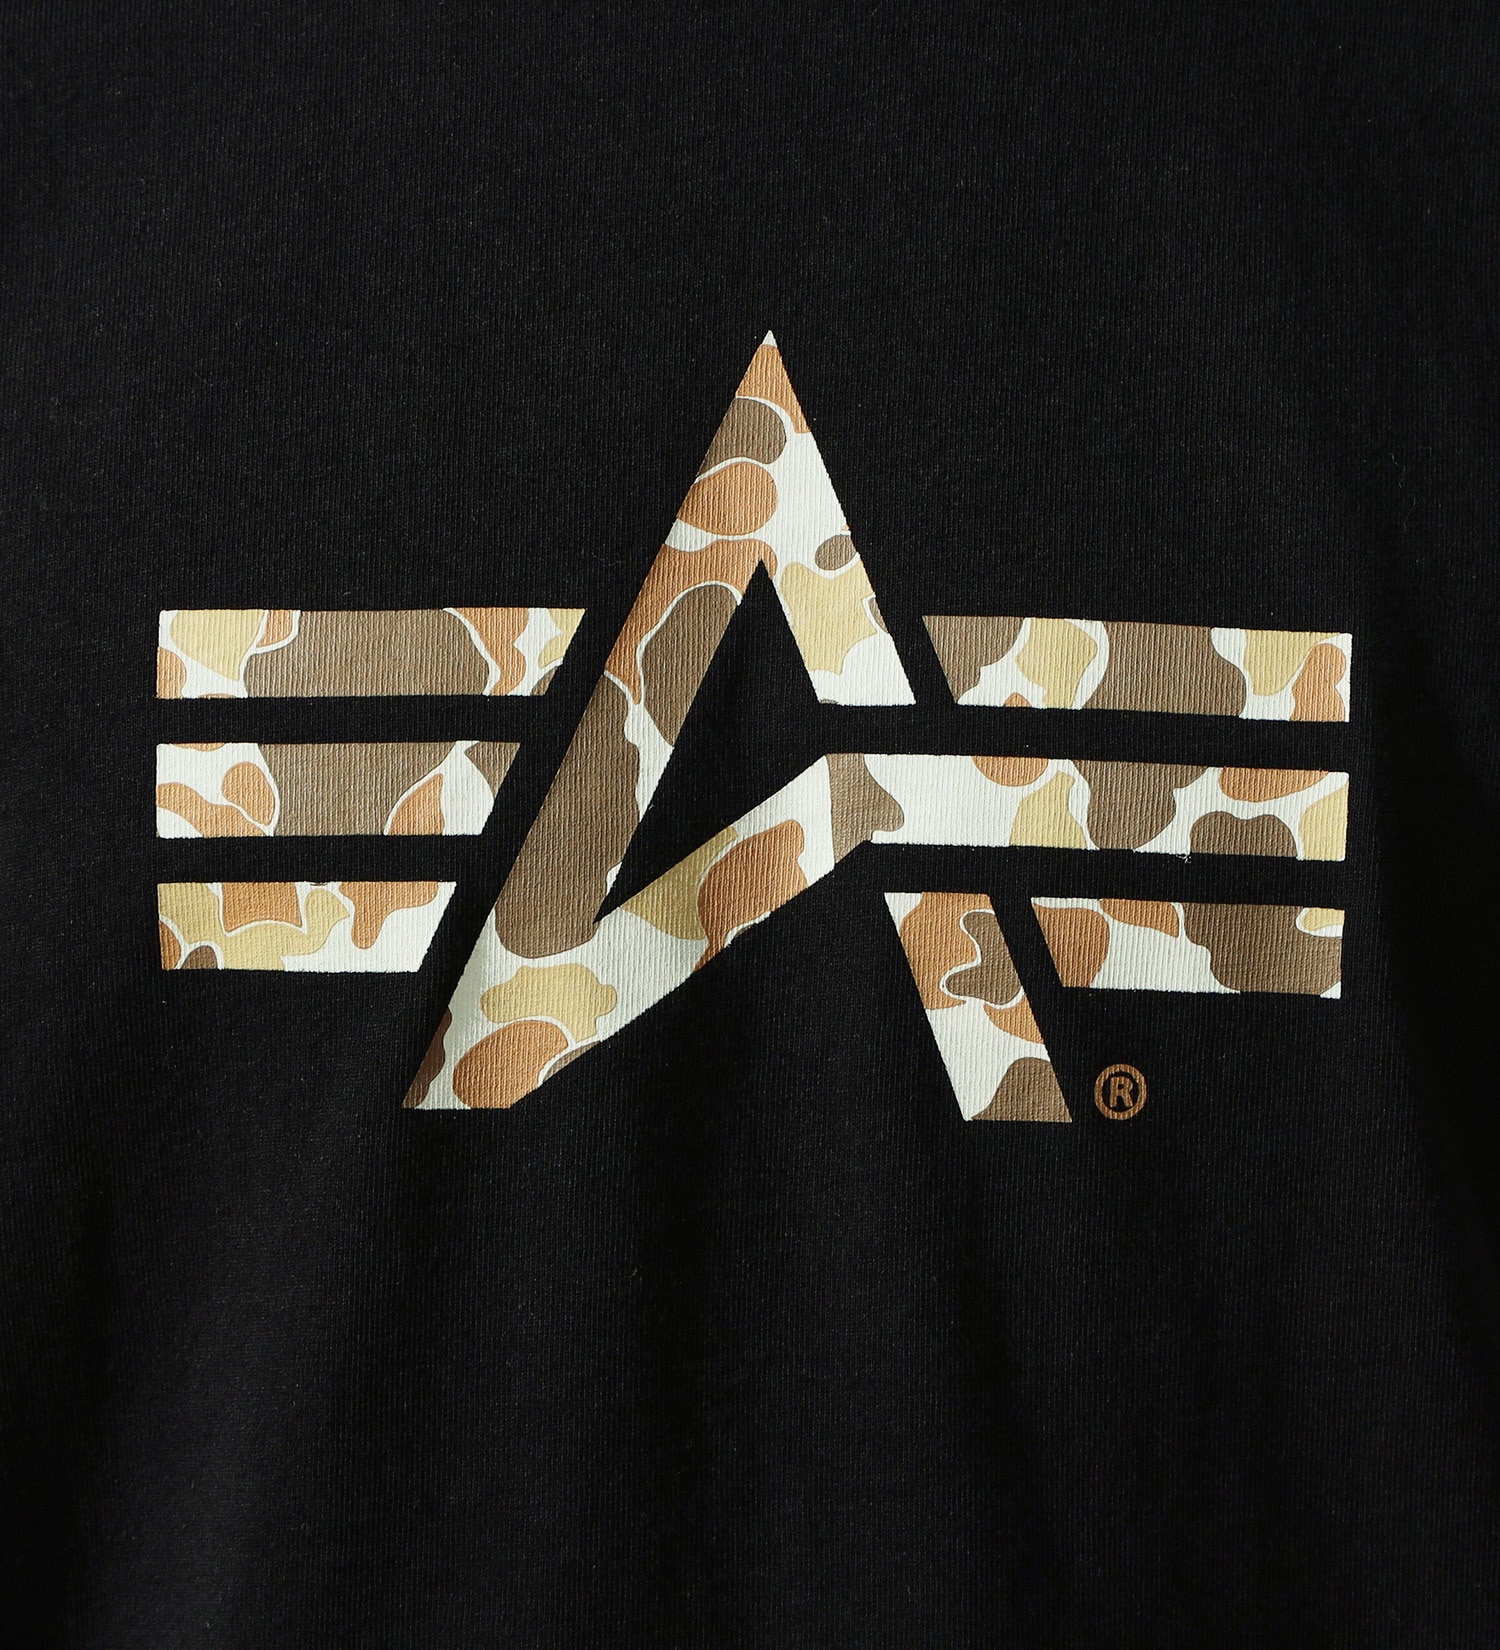 ALPHA(アルファ)のAマークロゴプリントTシャツ 半袖 (ブラウンフロッグスキンカモ)|トップス/Tシャツ/カットソー/メンズ|ブラック